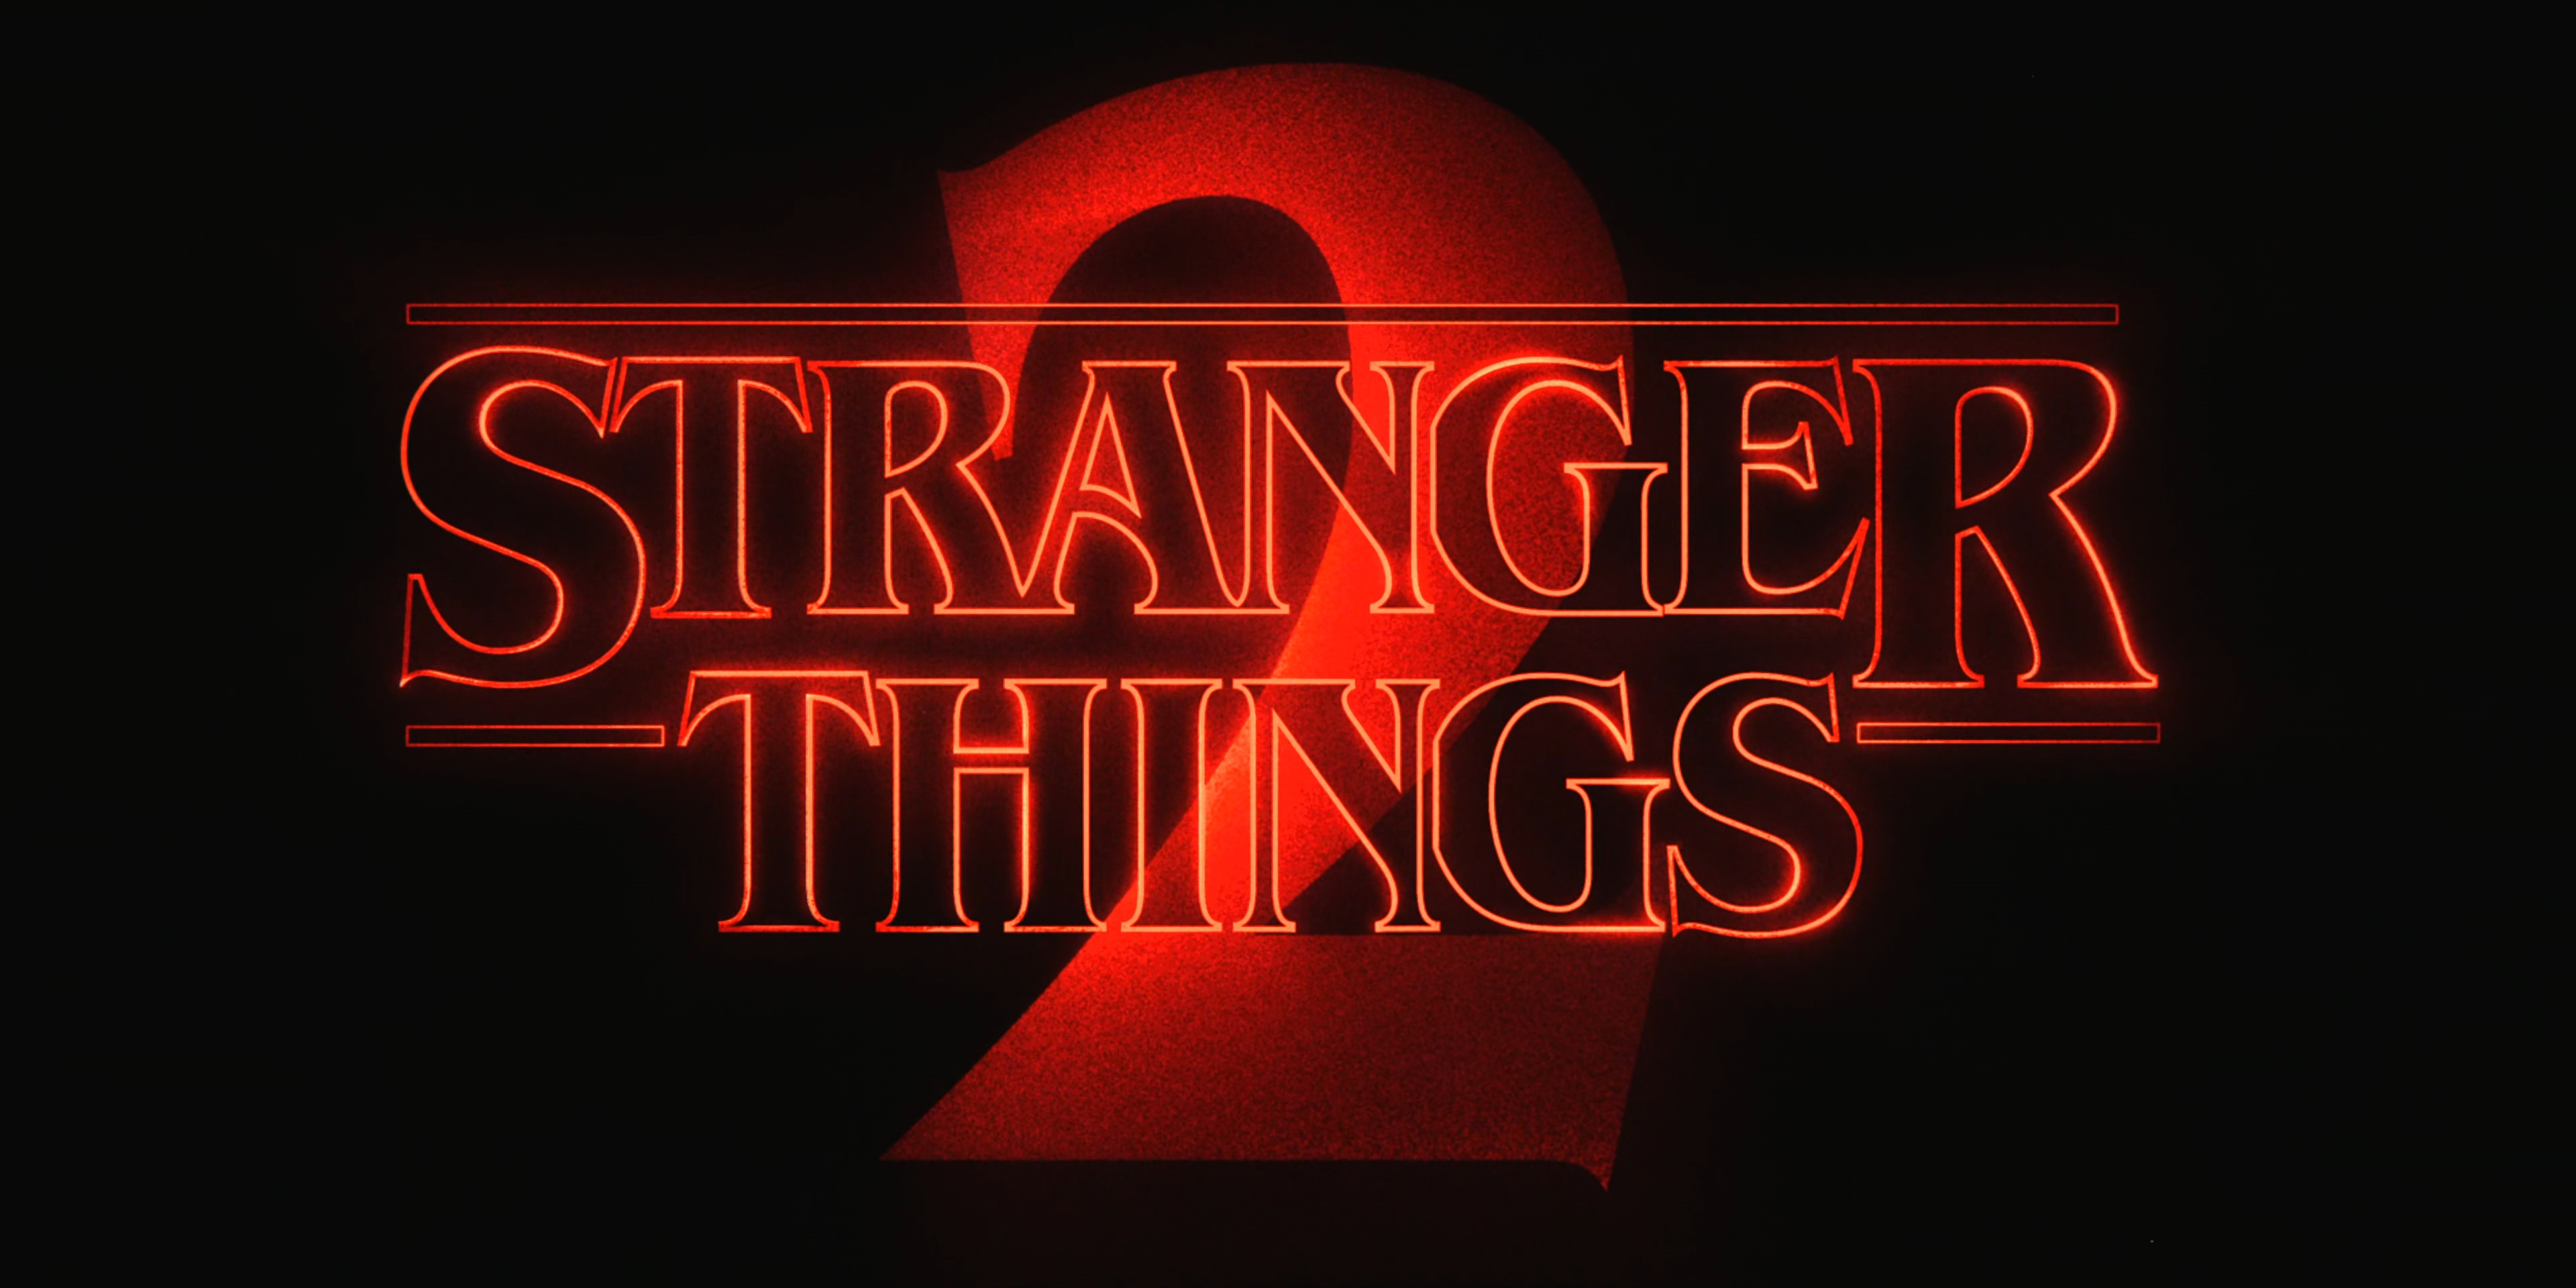 Stranger Things (season 2) - Wikipedia